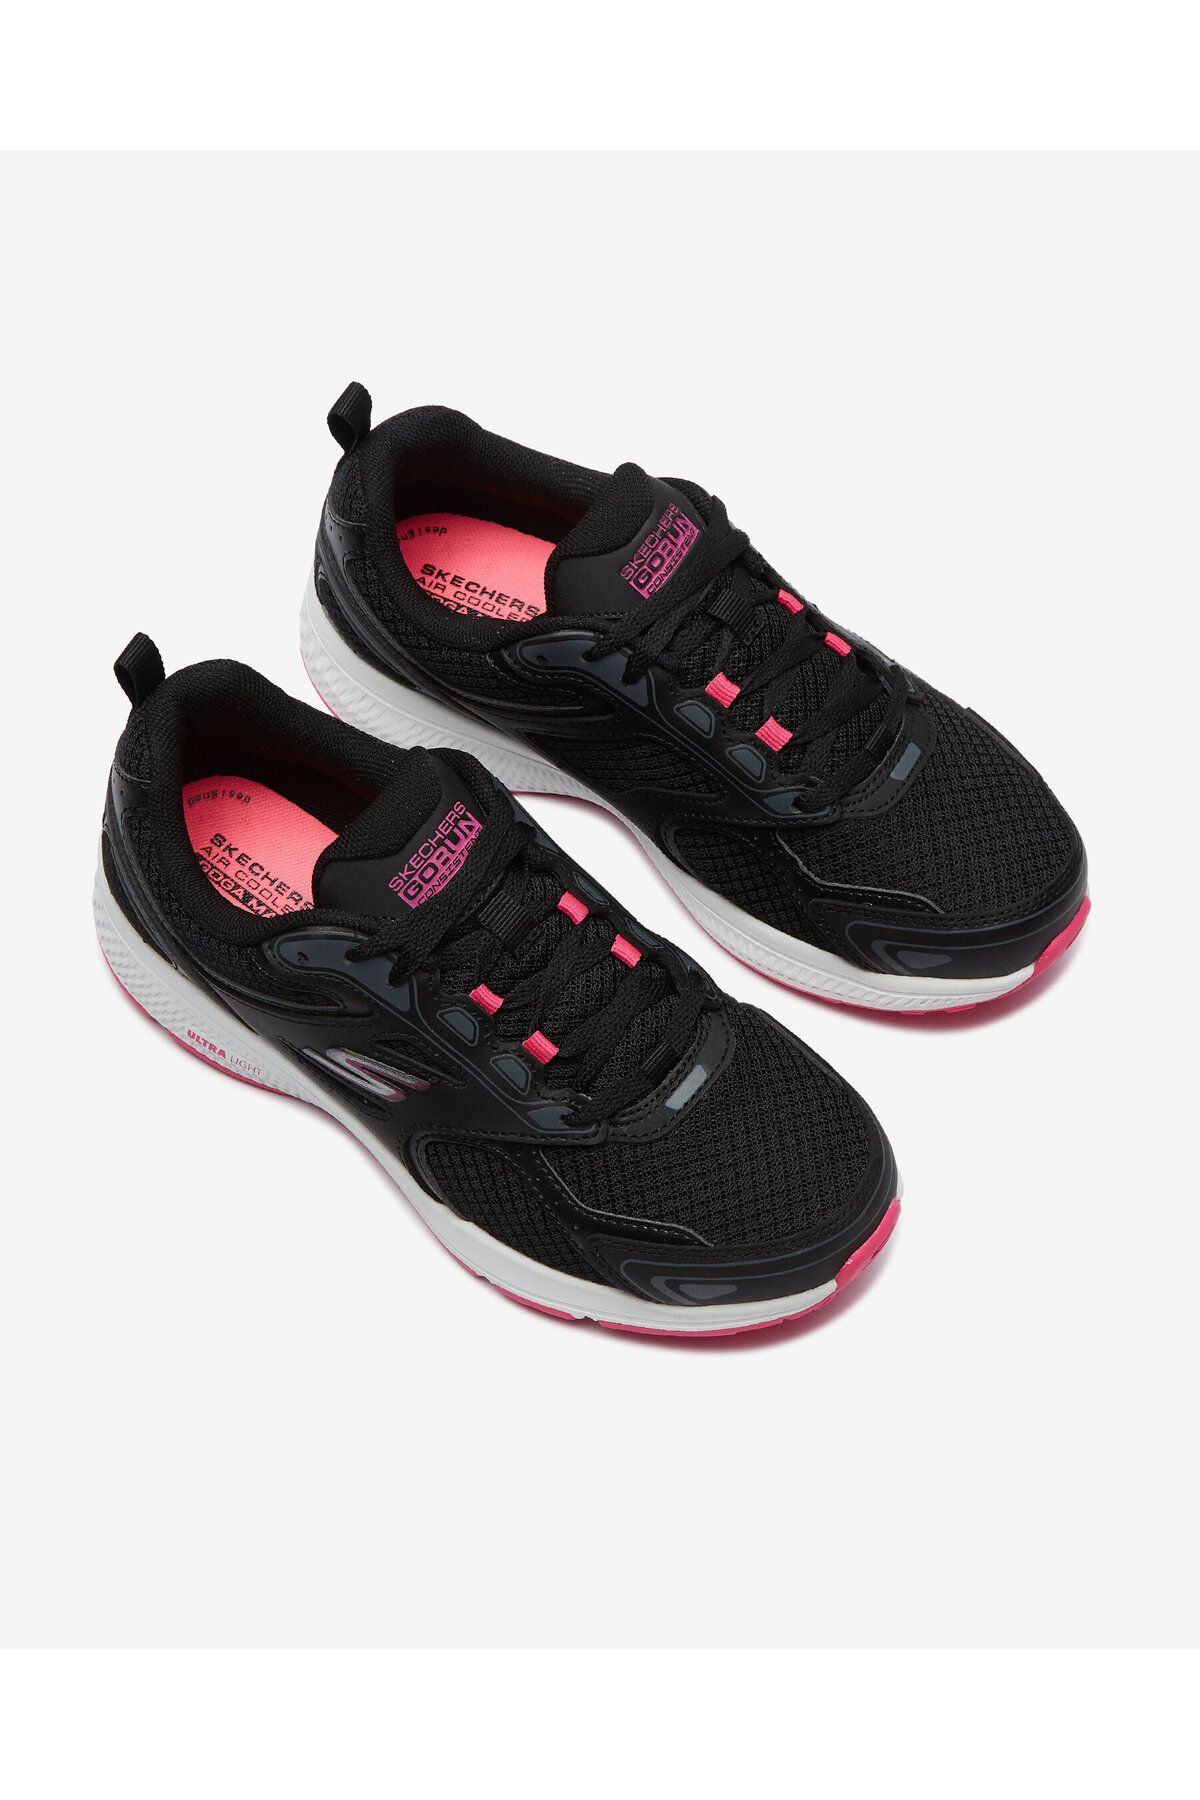 Skechers Go Run Consistent Kadın Siyah Koşu Ayakkabısı 128075 Bkpk